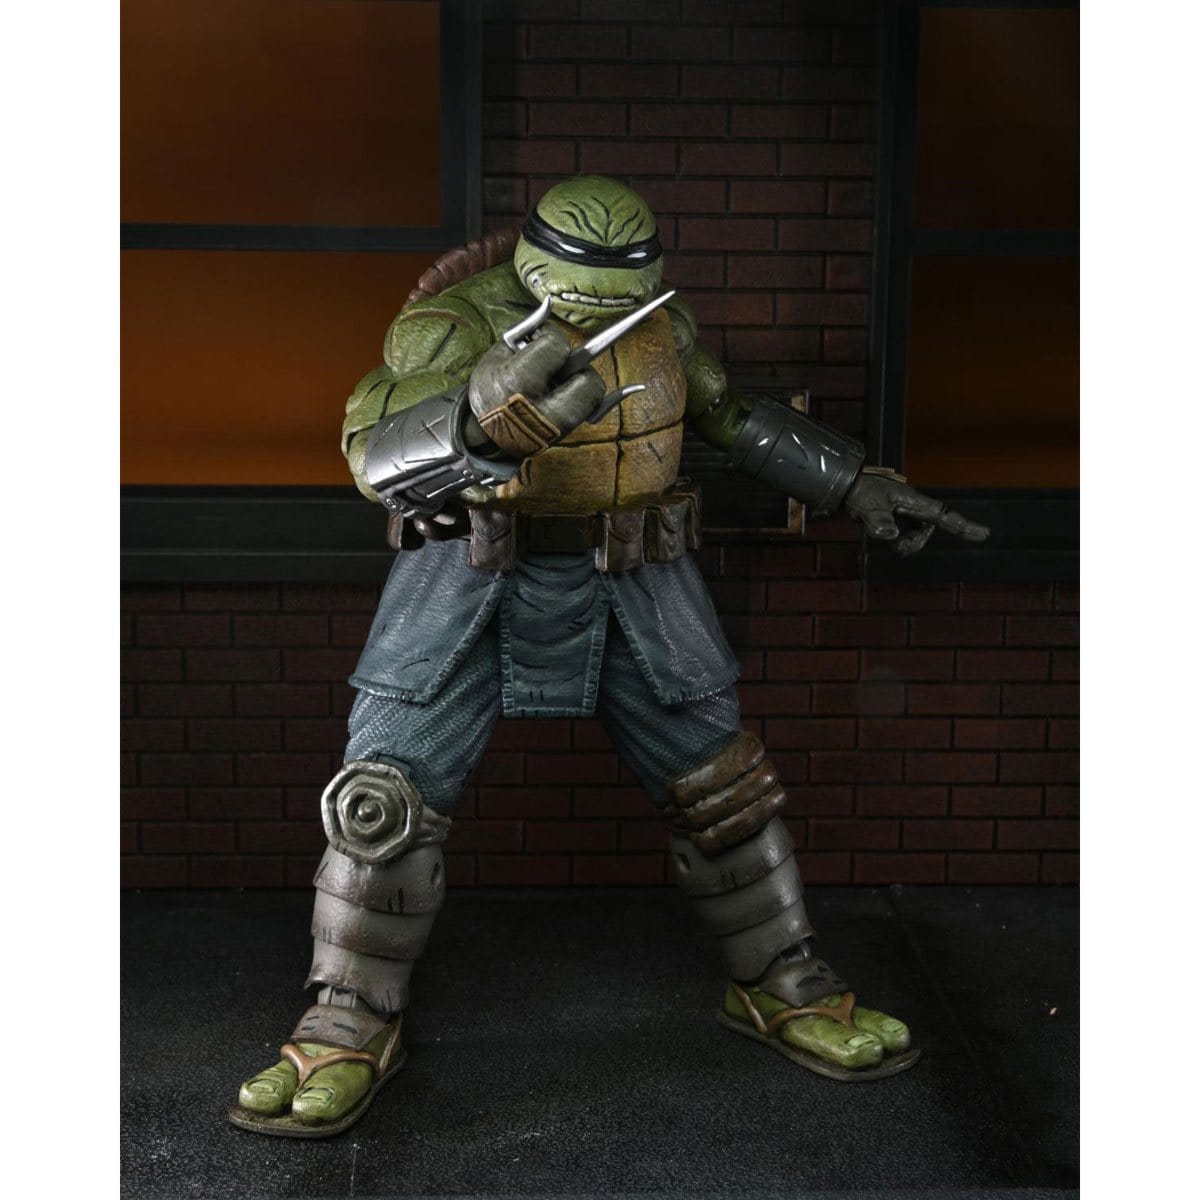 NECA Teenage Mutant Ninja Turtles Ultimate The Last Ronin Unarmored Action Figure